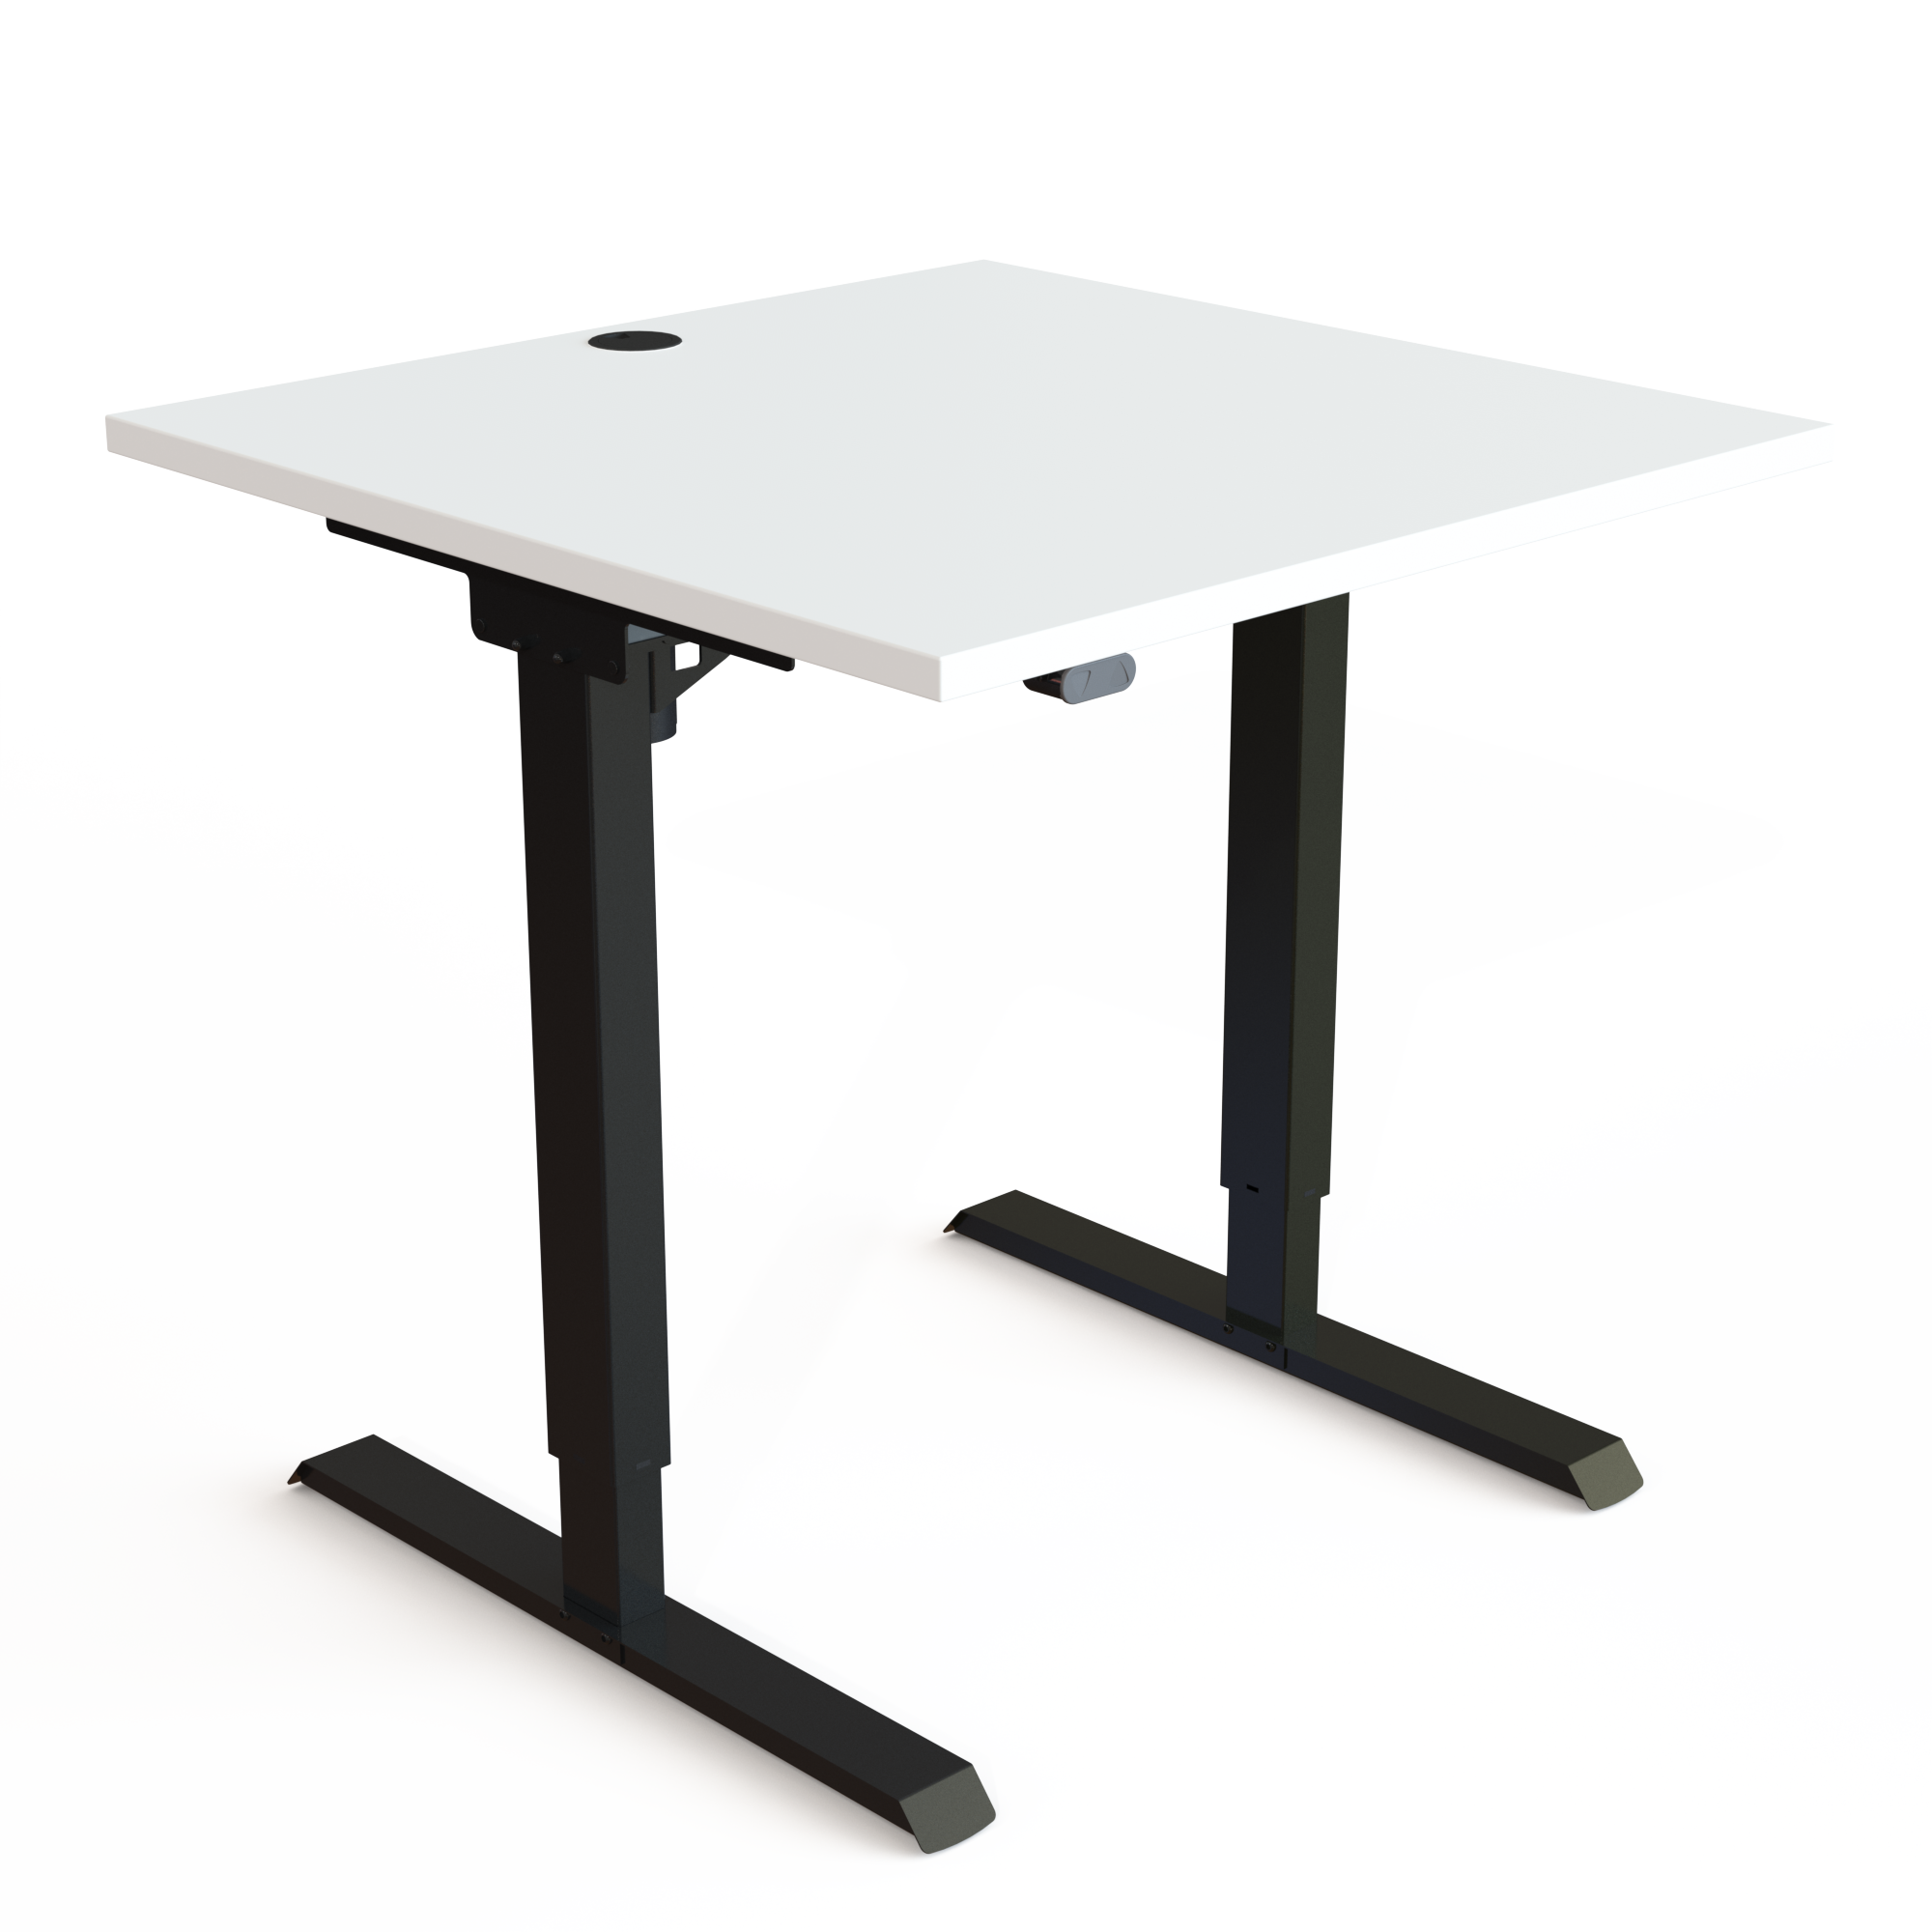 Schreibtisch steh/sitz | 80x80 cm | Weiß mit schwarzem Gestell